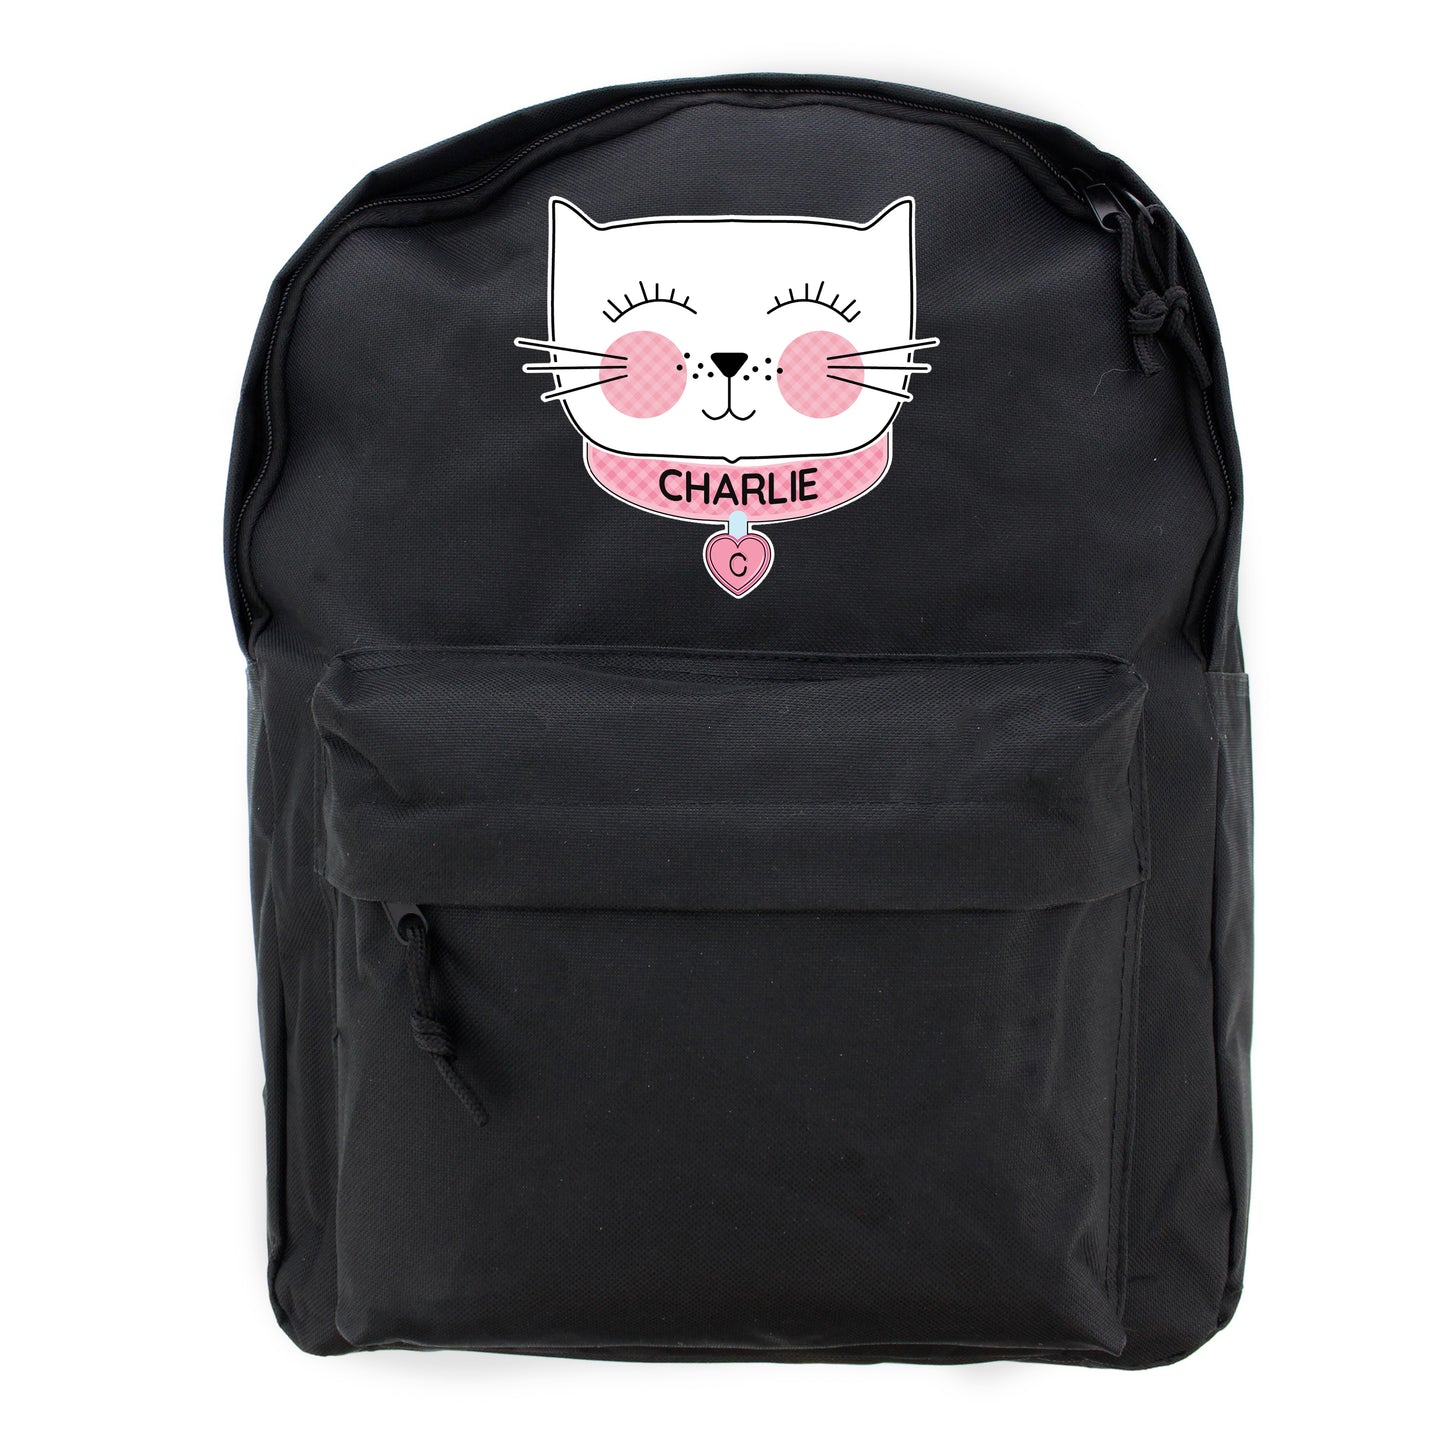 Personalised Cute Cat Black Backpack